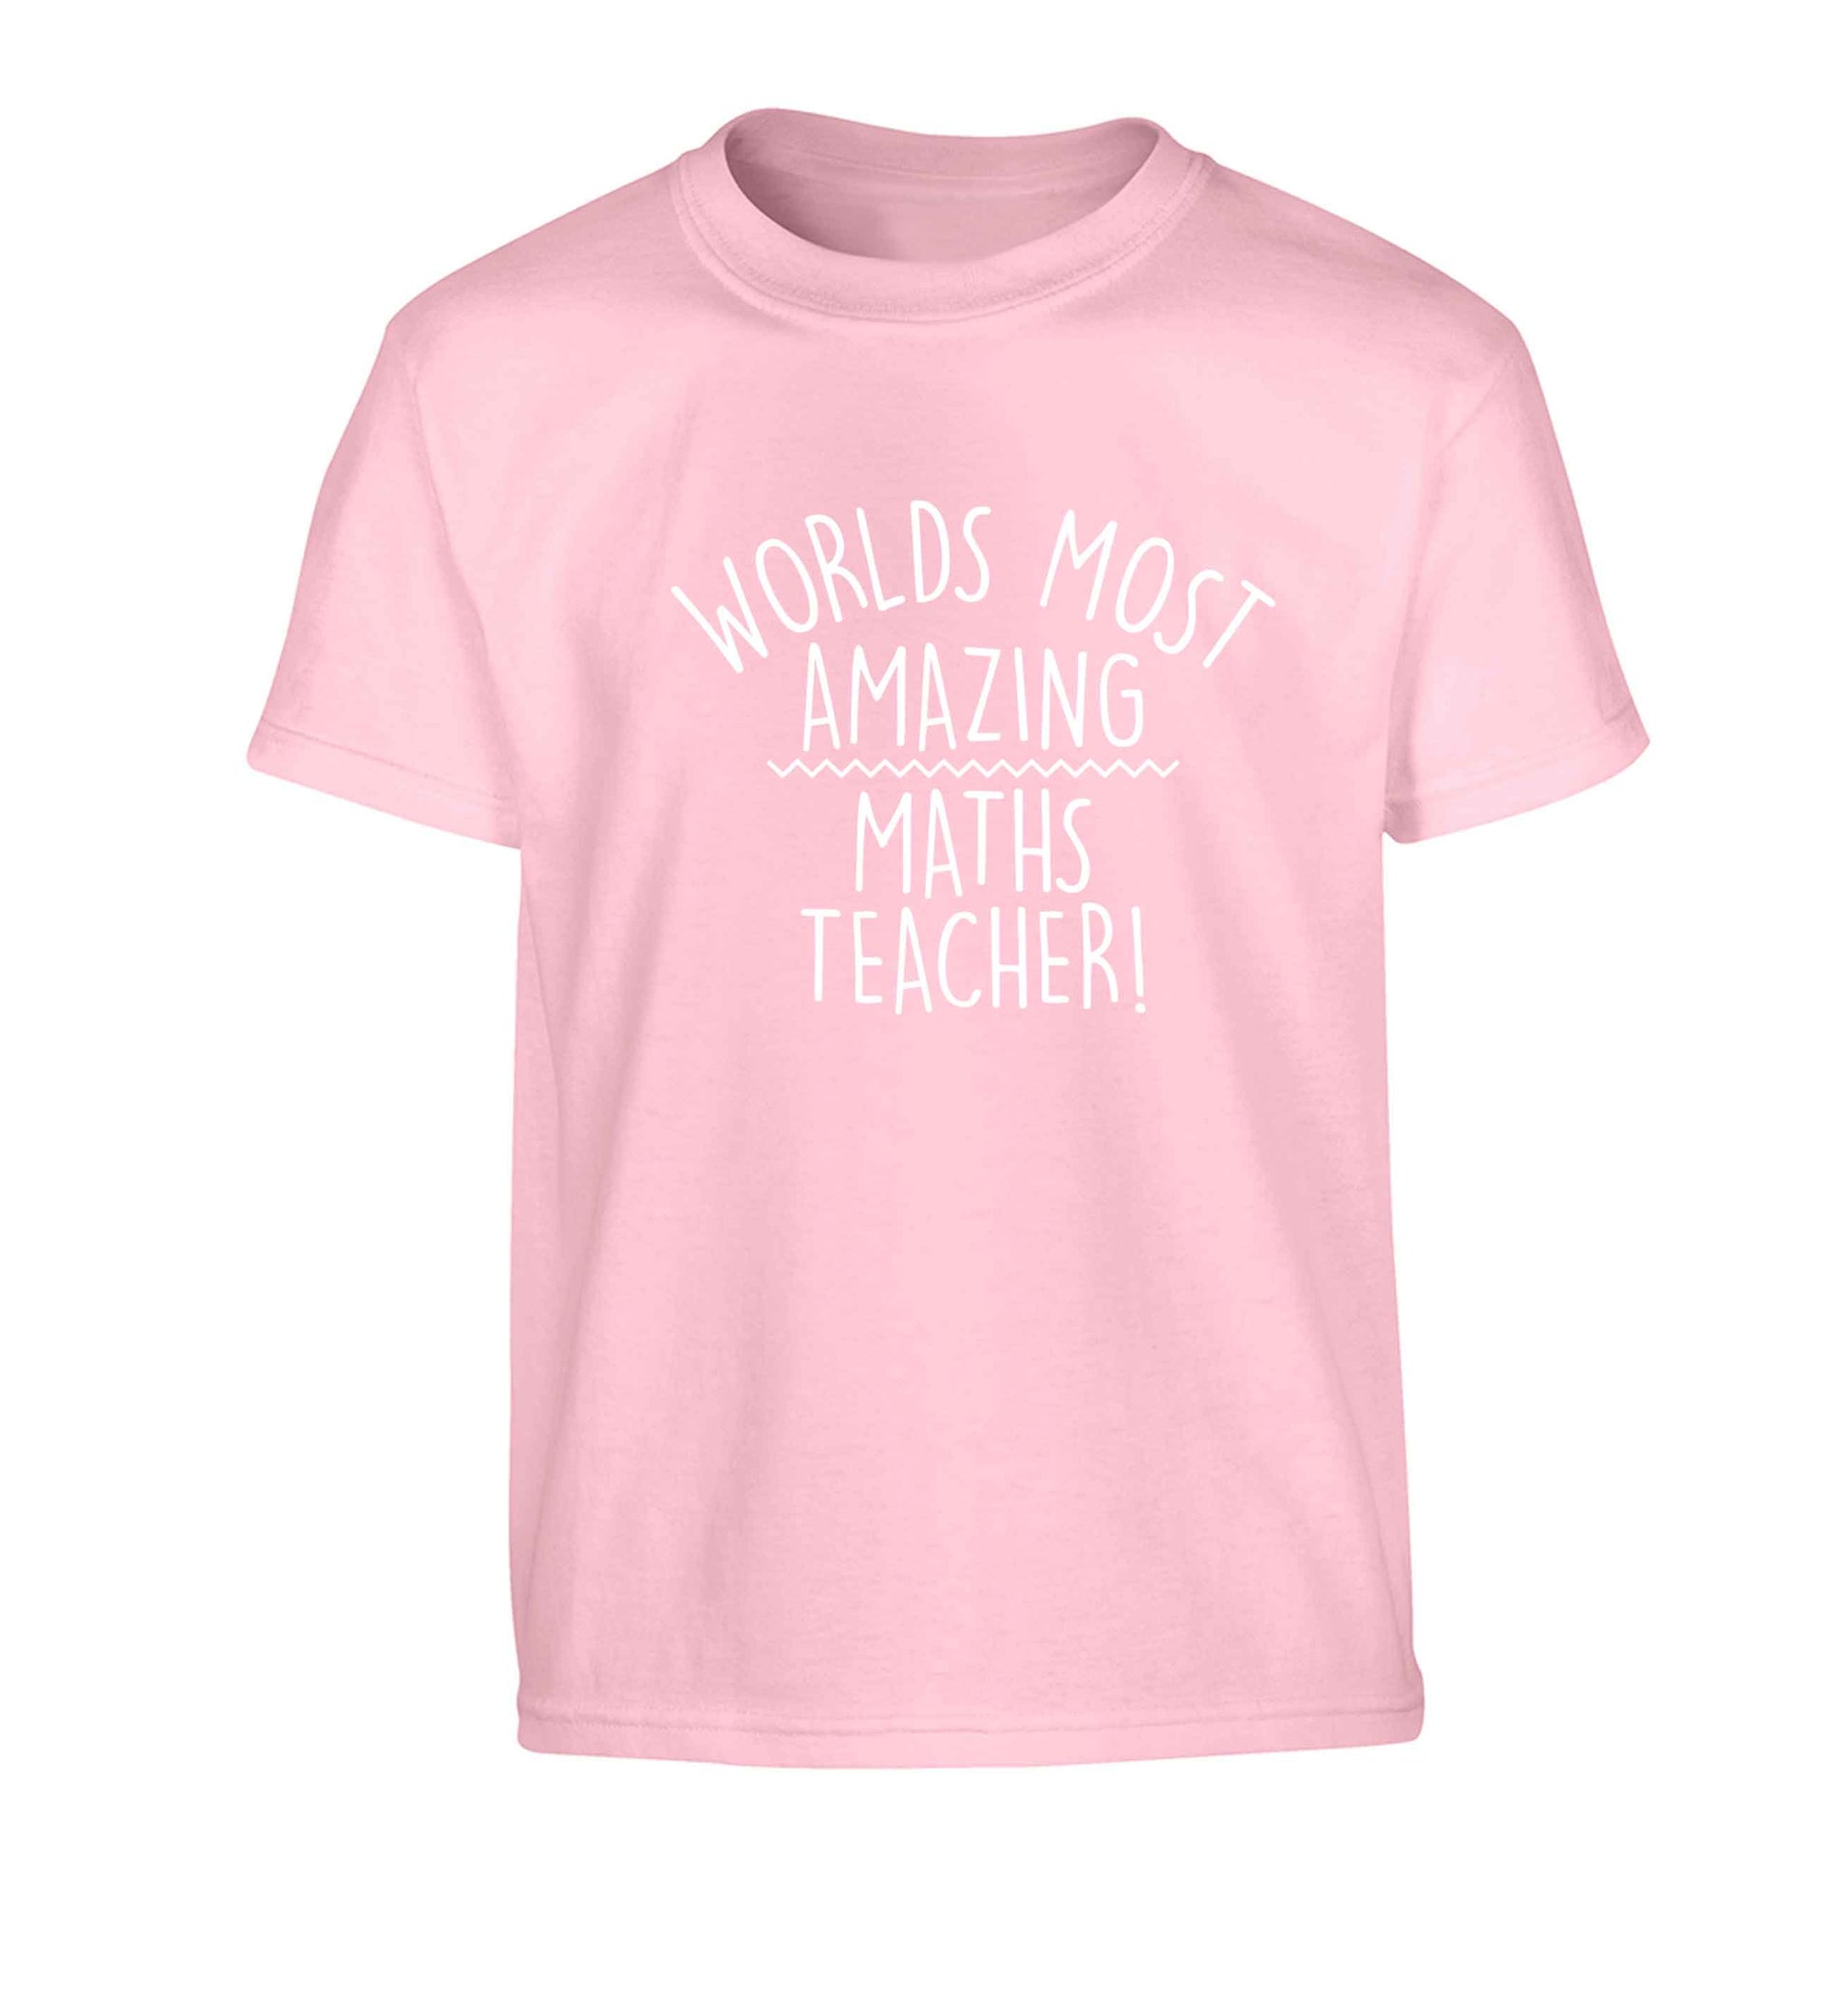 Worlds most amazing maths teacher Children's light pink Tshirt 12-13 Years